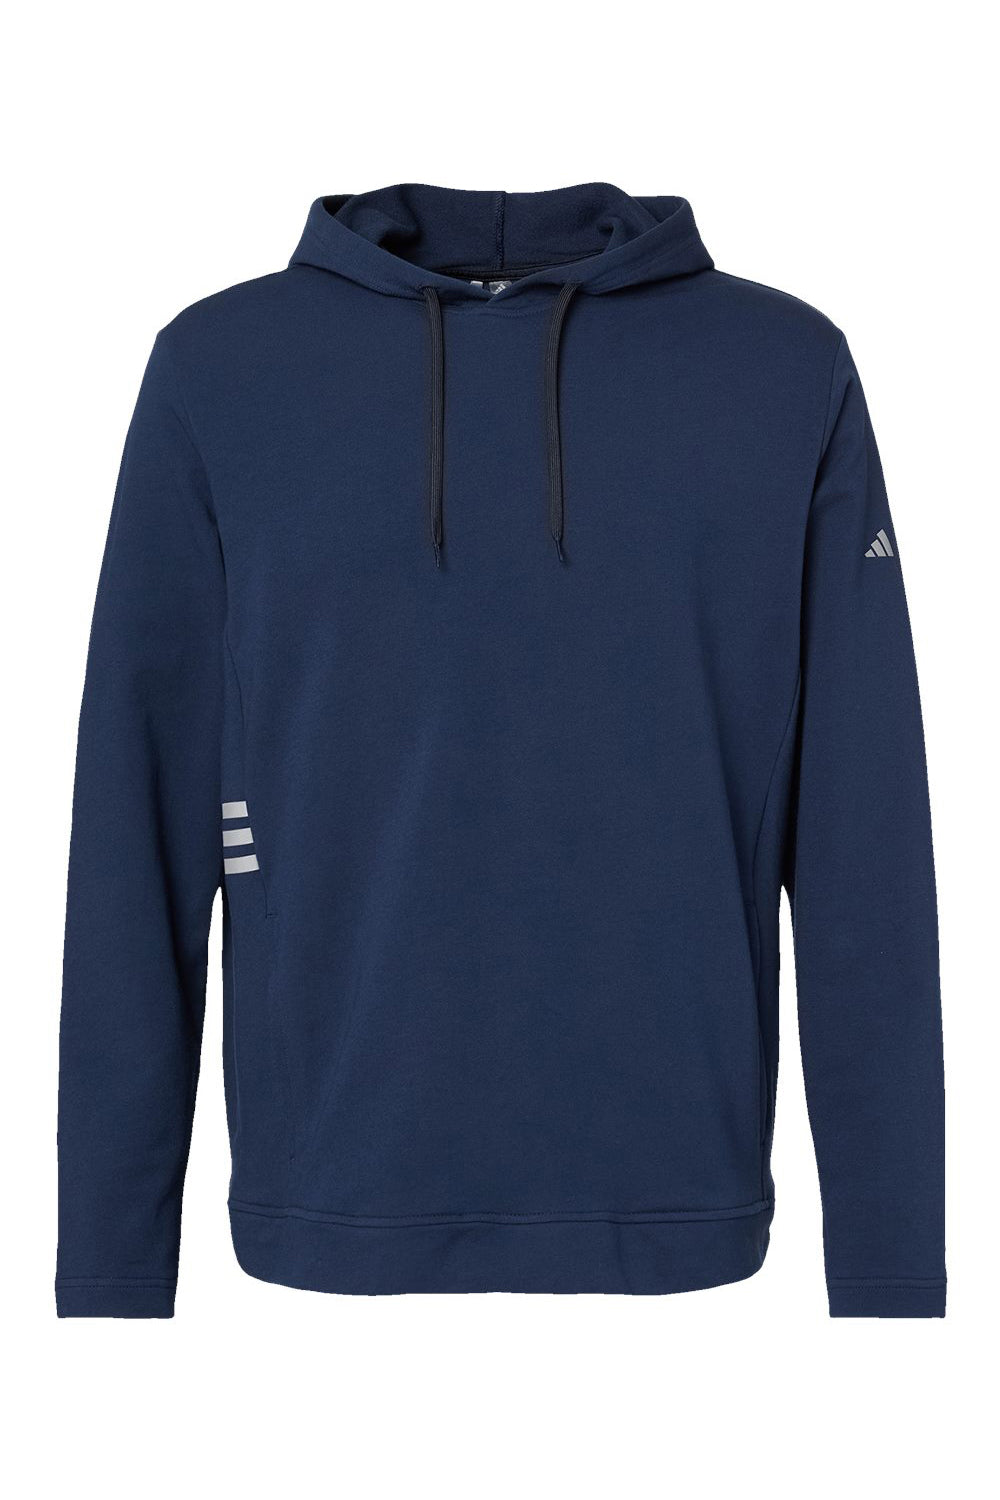 Adidas A450 Mens Hooded Sweatshirt Hoodie Collegiate Navy Blue Flat Front